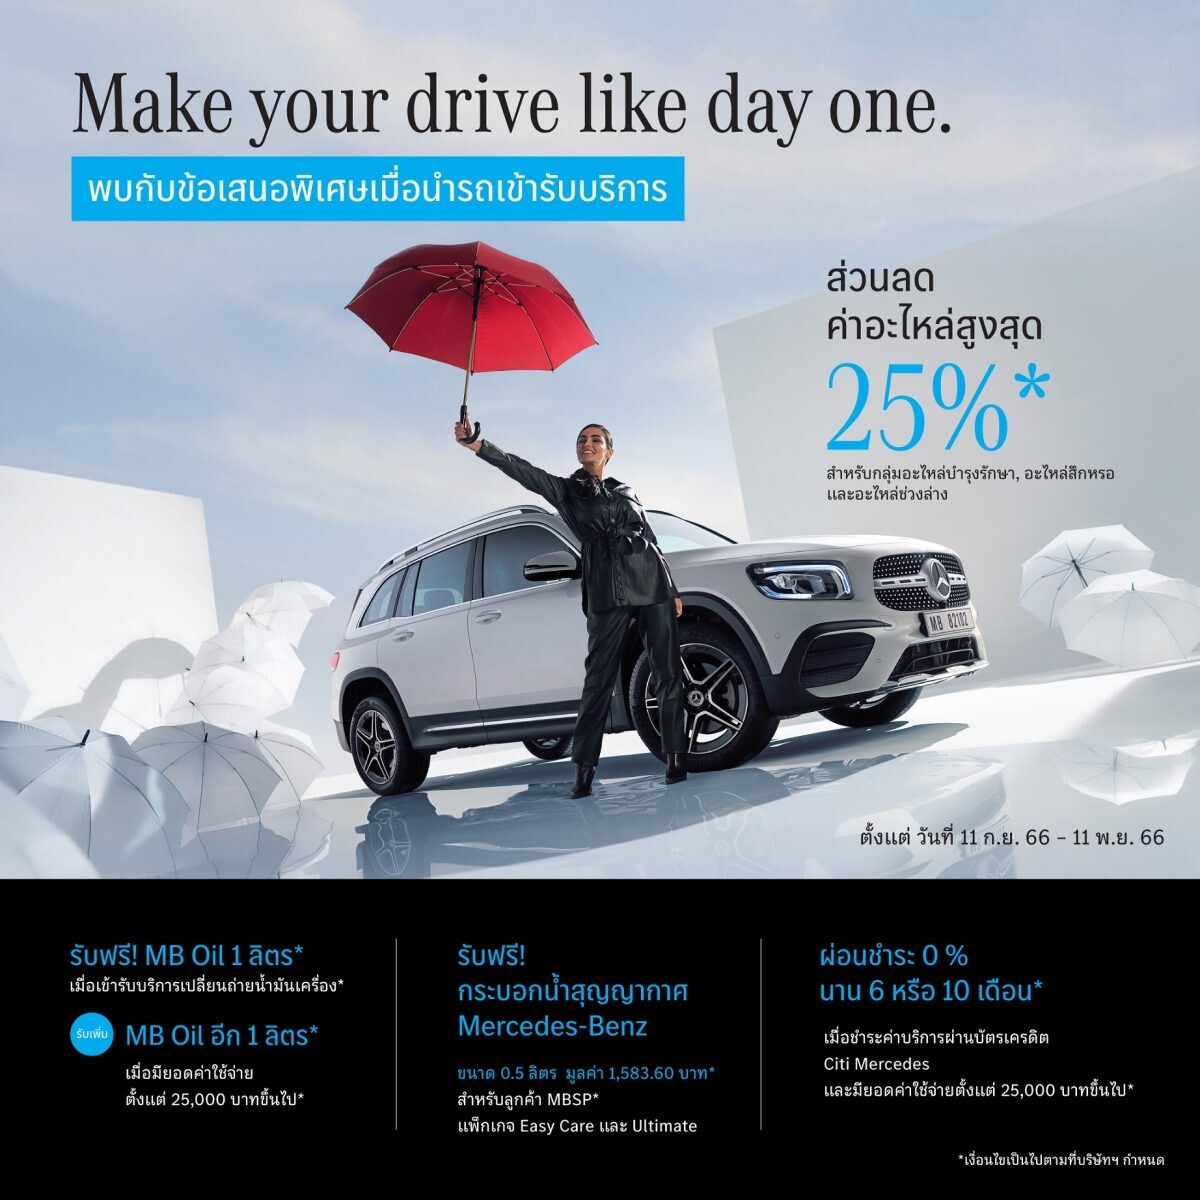 เมอร์เซเดส-เบนซ์ มอบดีลพิเศษในแคมเปญ "Make your drive like day one" ชวนลูกค้าดูแลรถเบนซ์ให้เหมือนวันแรกของการใช้งาน กับส่วนลดอะไหล่สูงสุด 25%